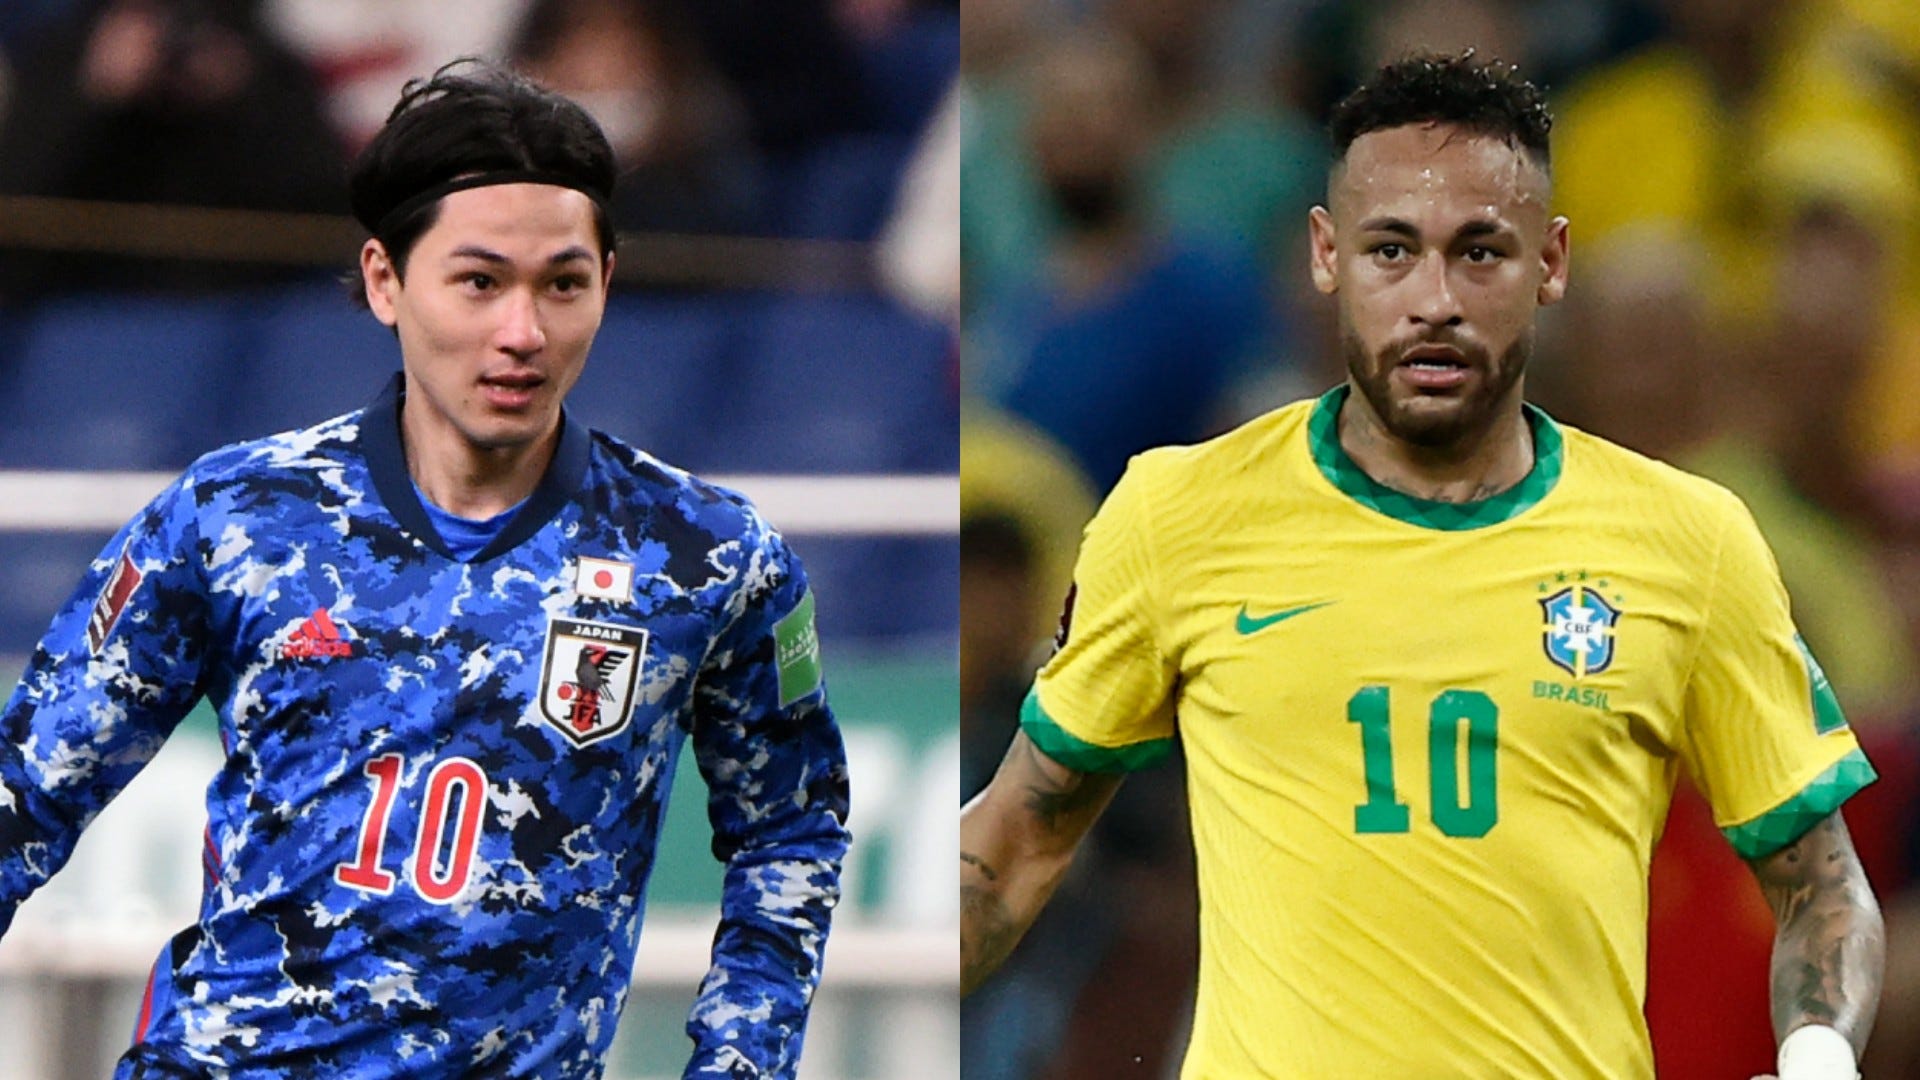 6月6日テレビ放送 日本対ブラジル 地上波 民放の中継予定は Goal Com 日本